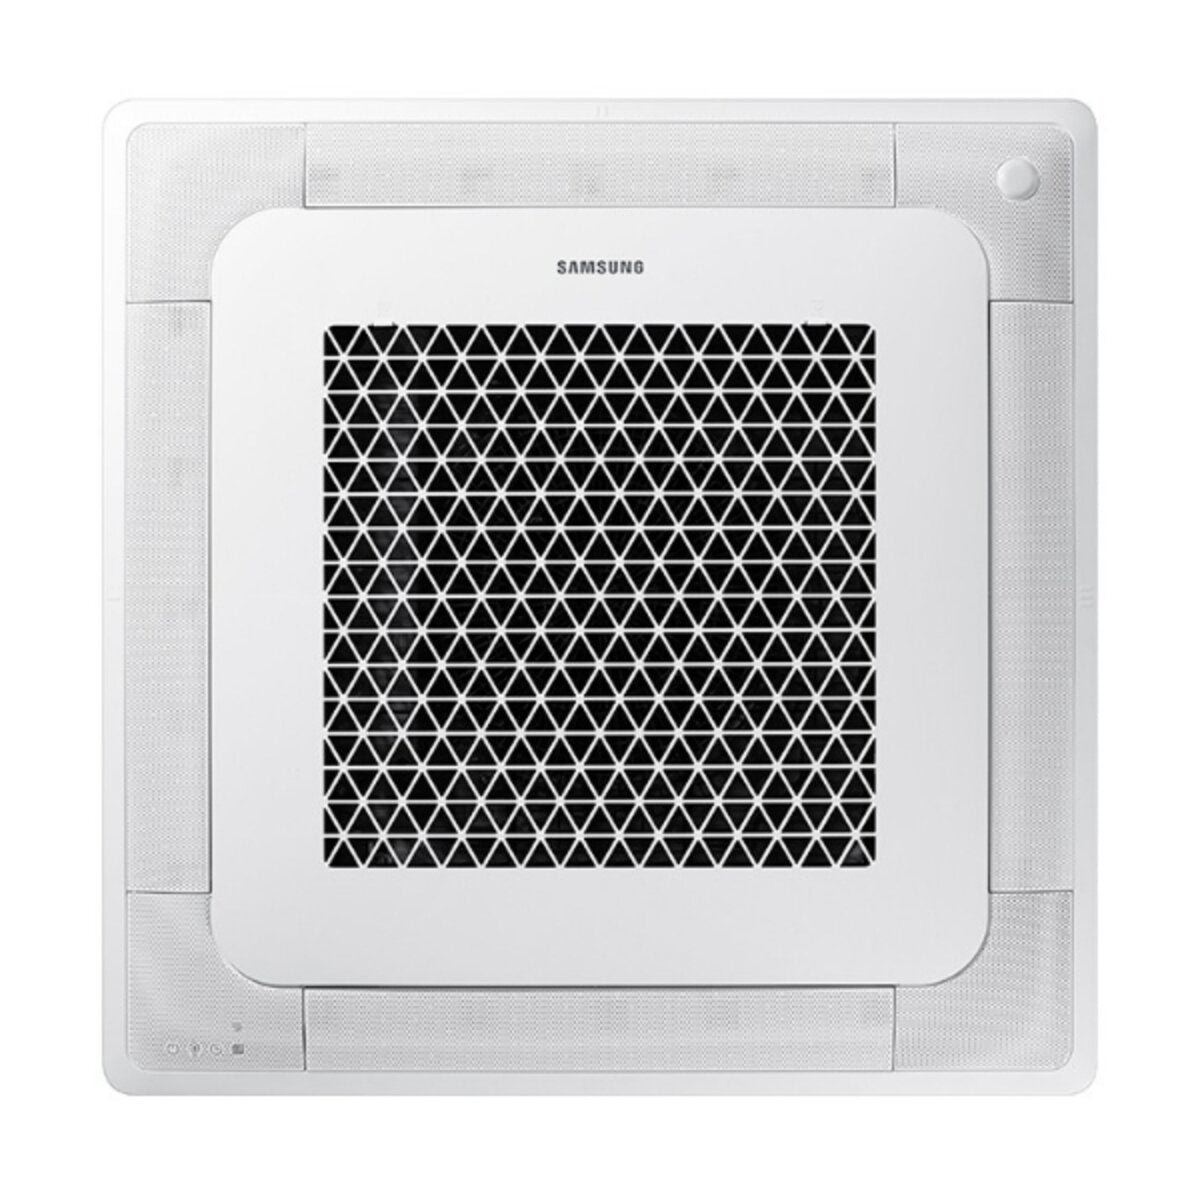 Samsung Klimaanlage Windfree 4-Wege Square Split 7000 + 9000 + 9000 + 12000 BTU Inverter A++ Außengerät 8,0 kW